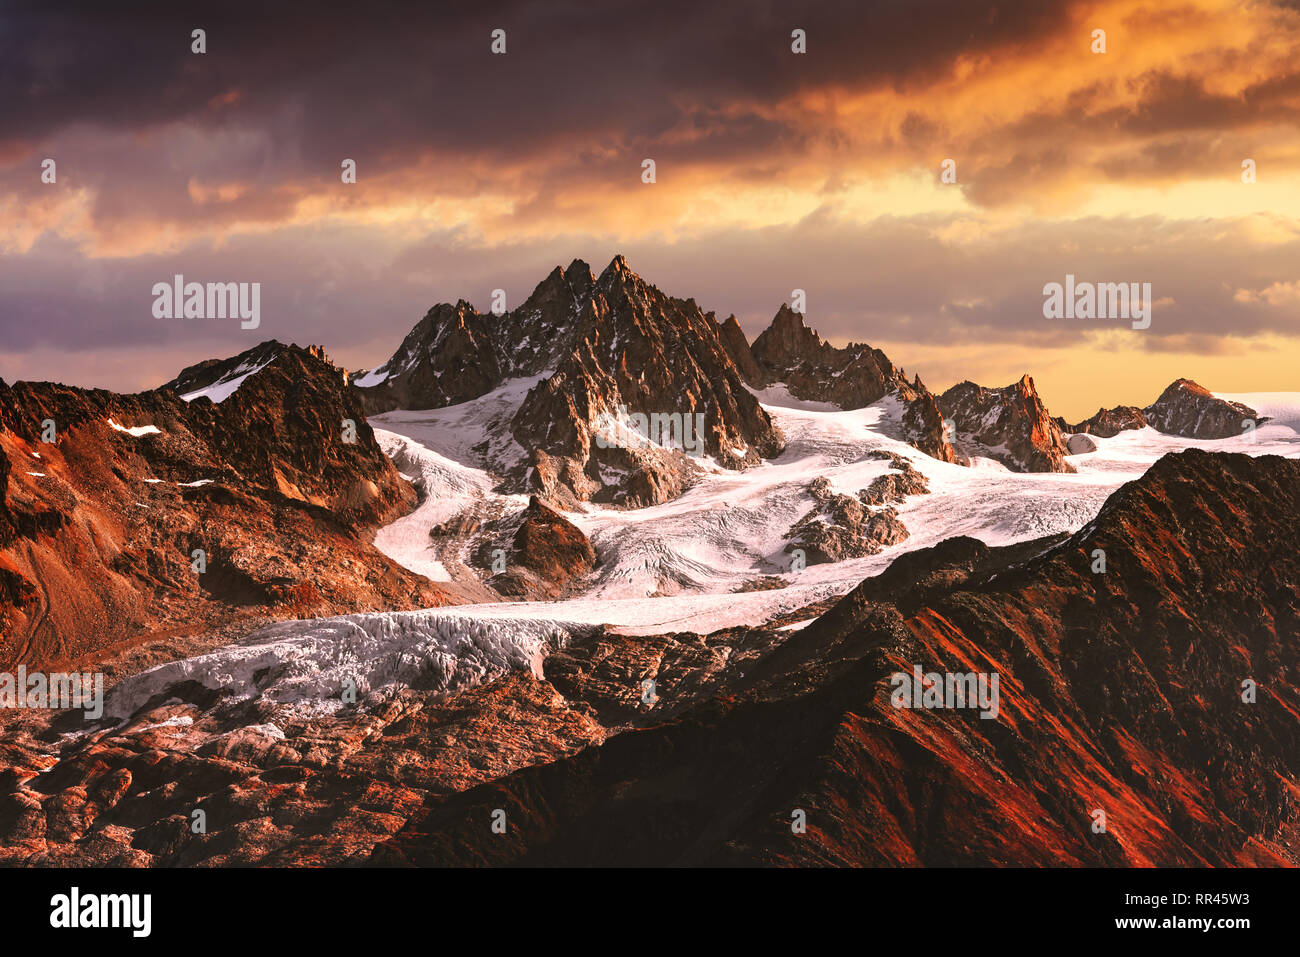 Paisaje de montañas alpinas con glaciares y picos cubiertos de nieve Foto de stock